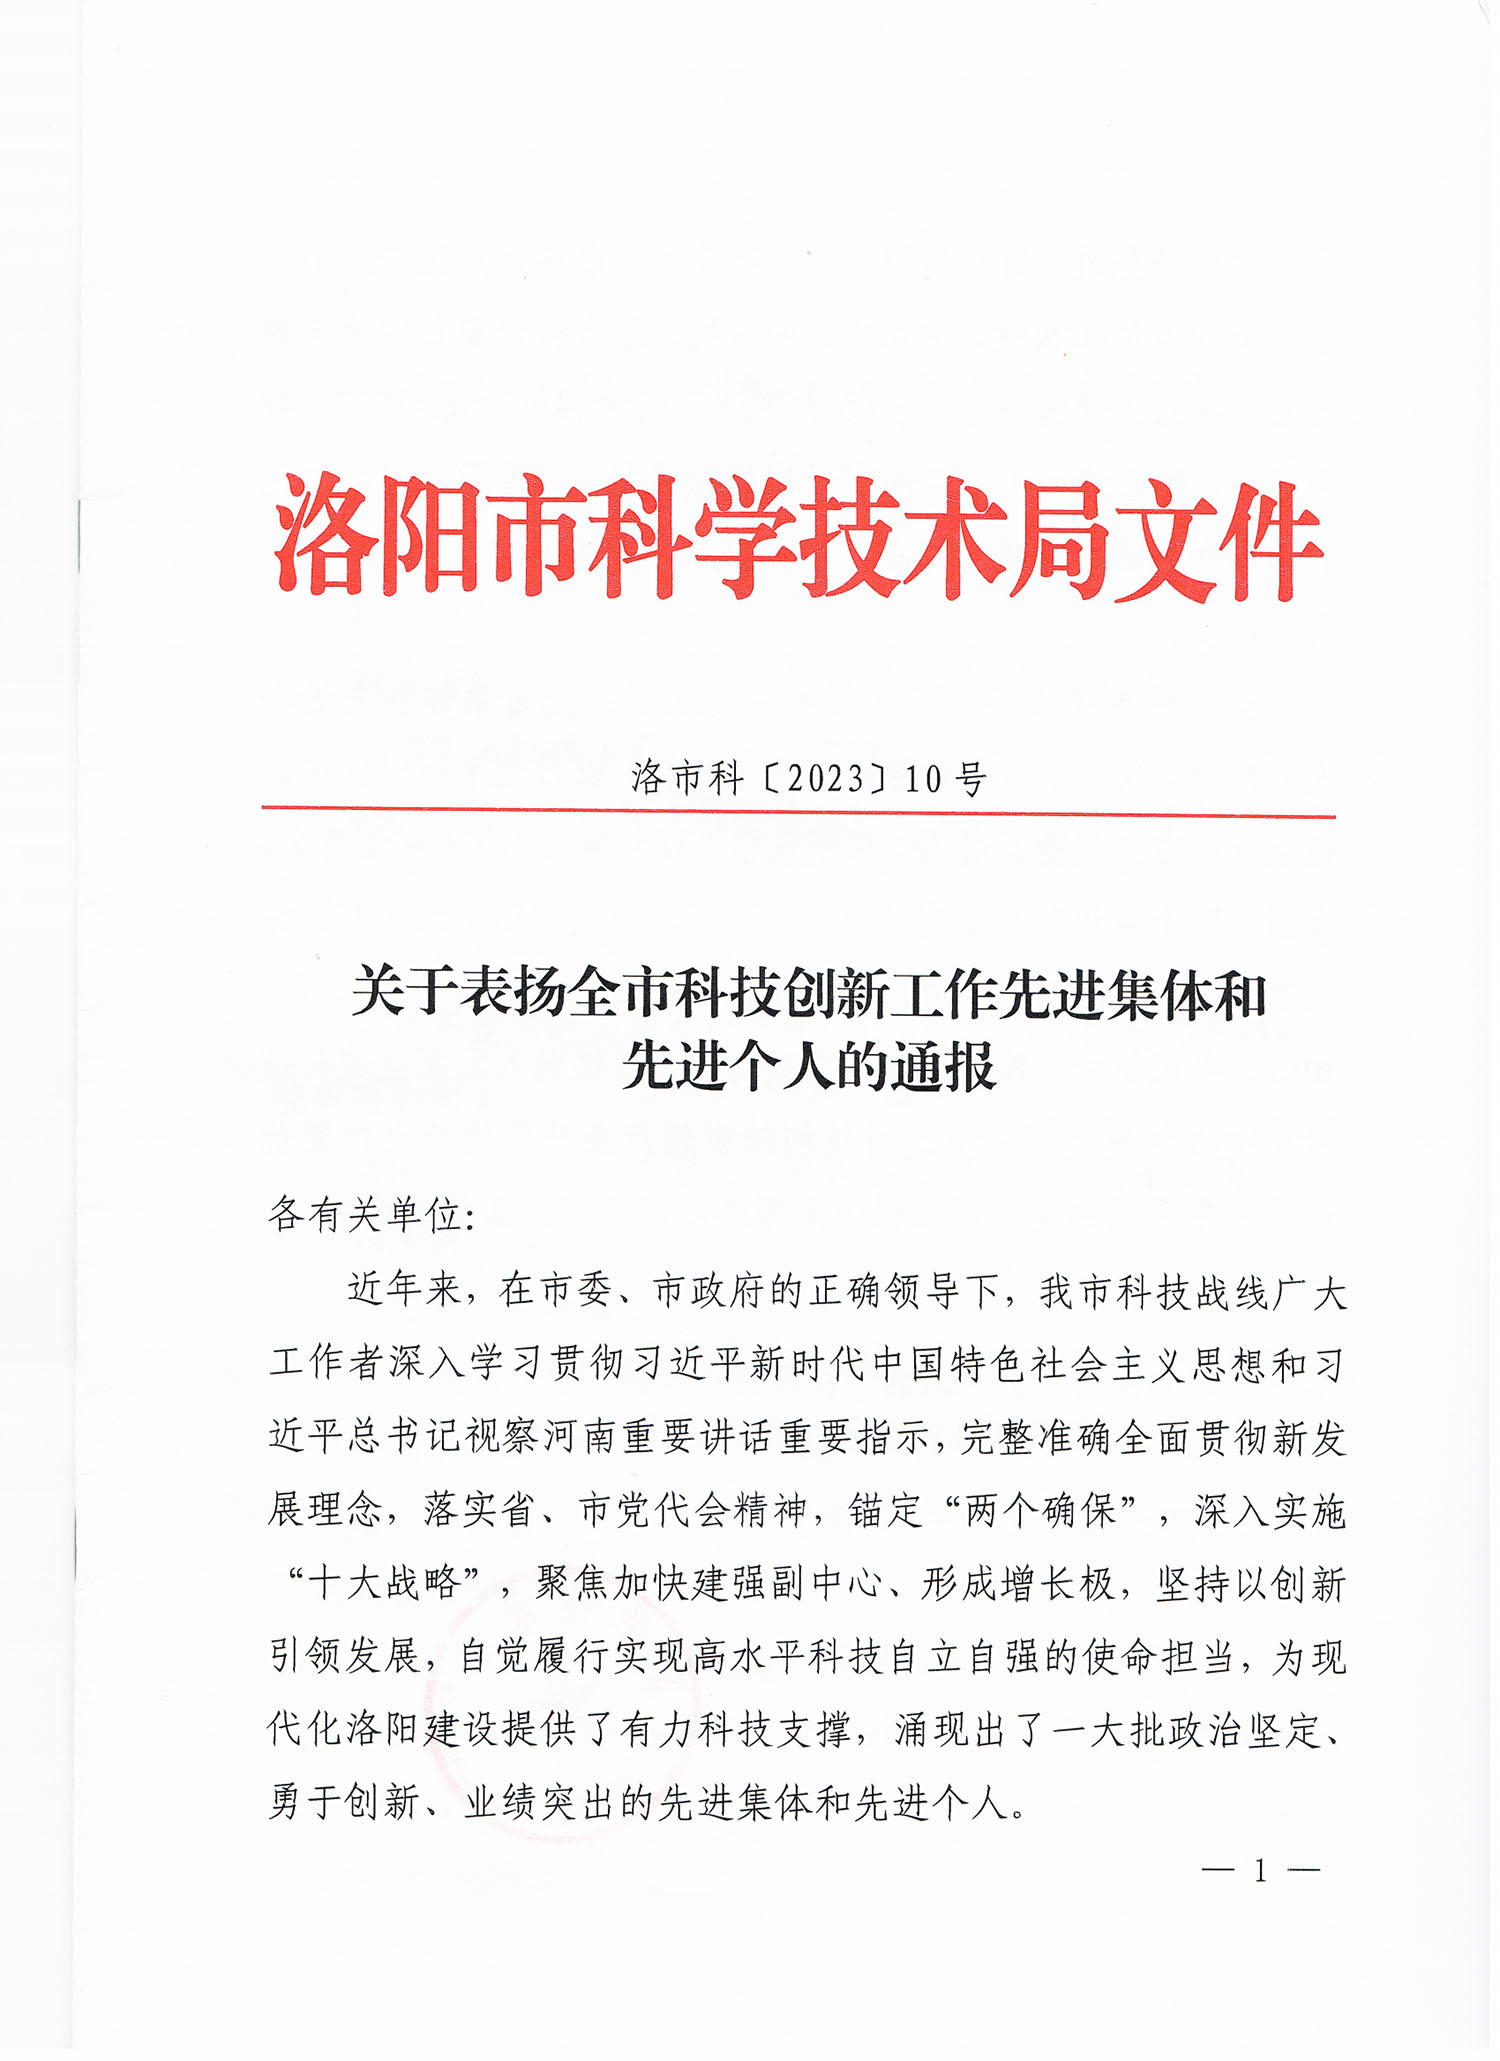 我公司法人刘文朋荣获洛阳市科技局颁发的“先进个人”的荣誉称号